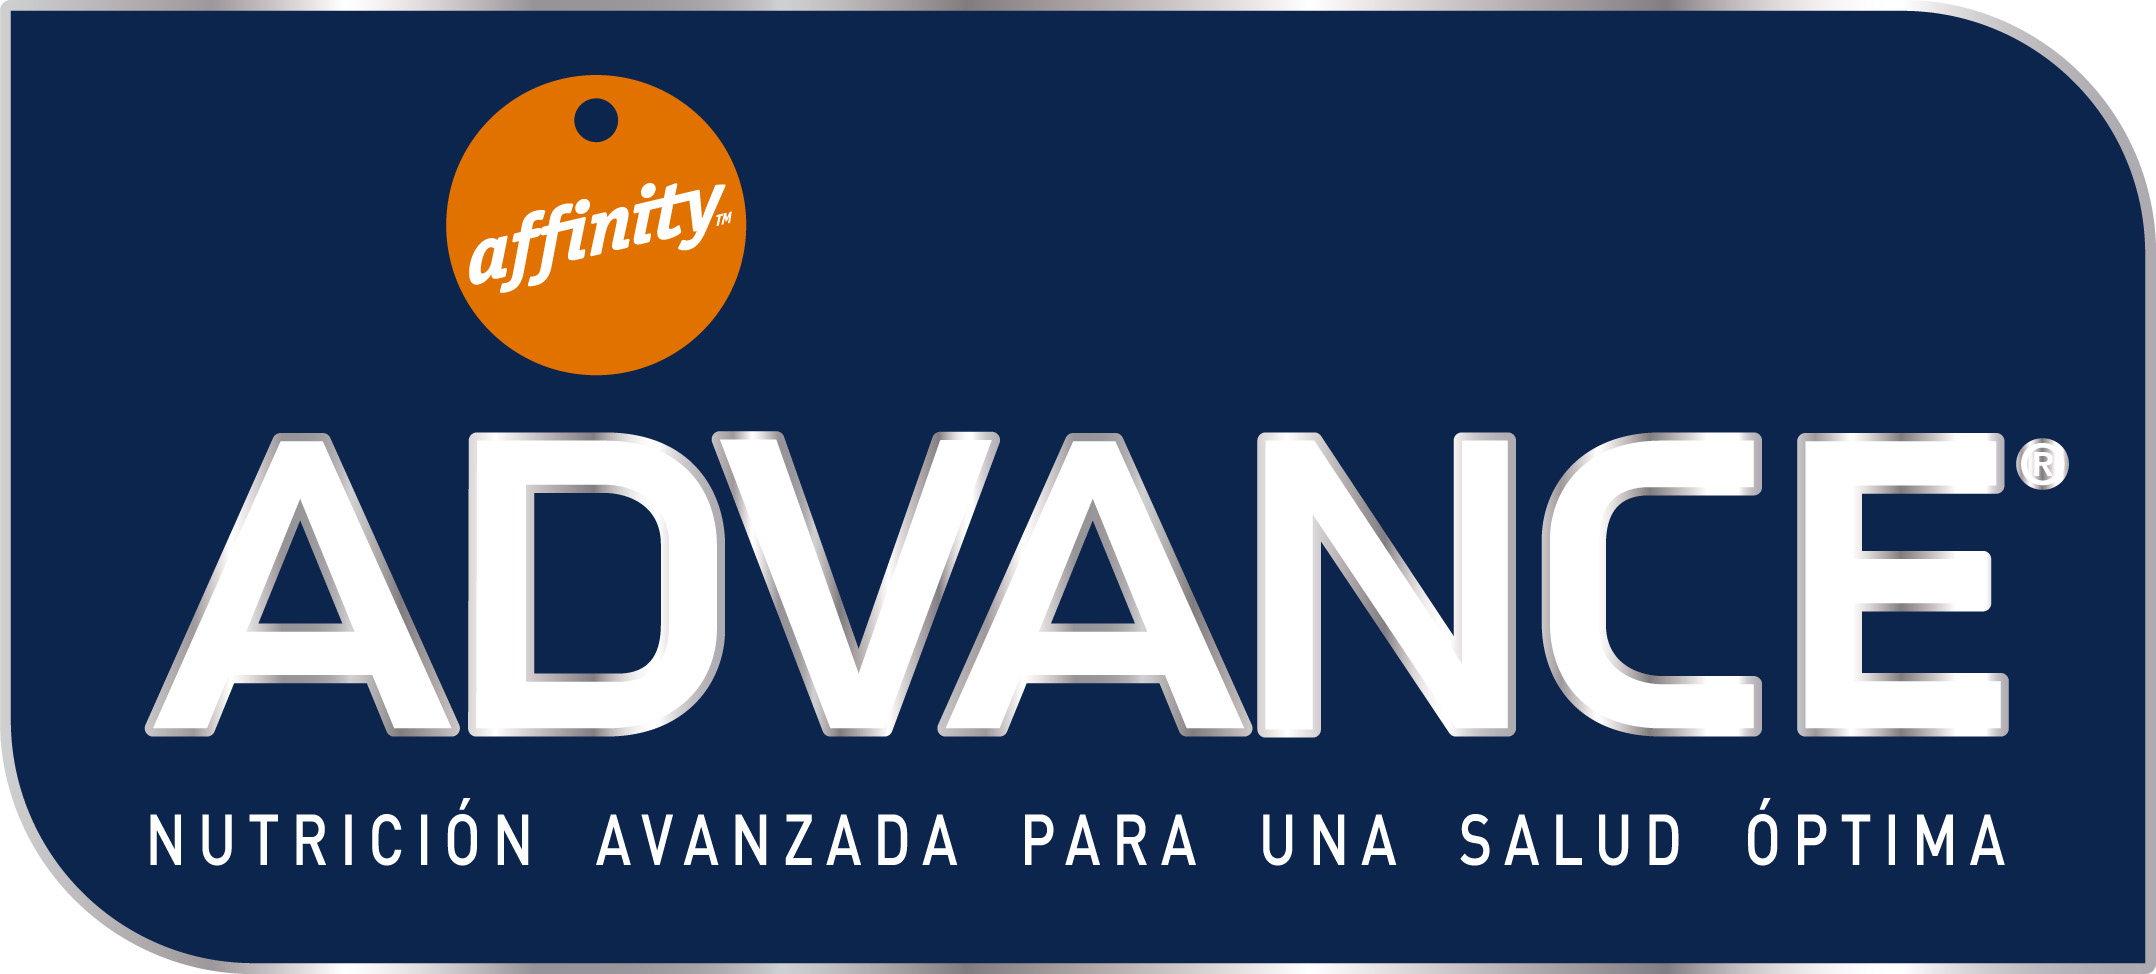 logo-advance